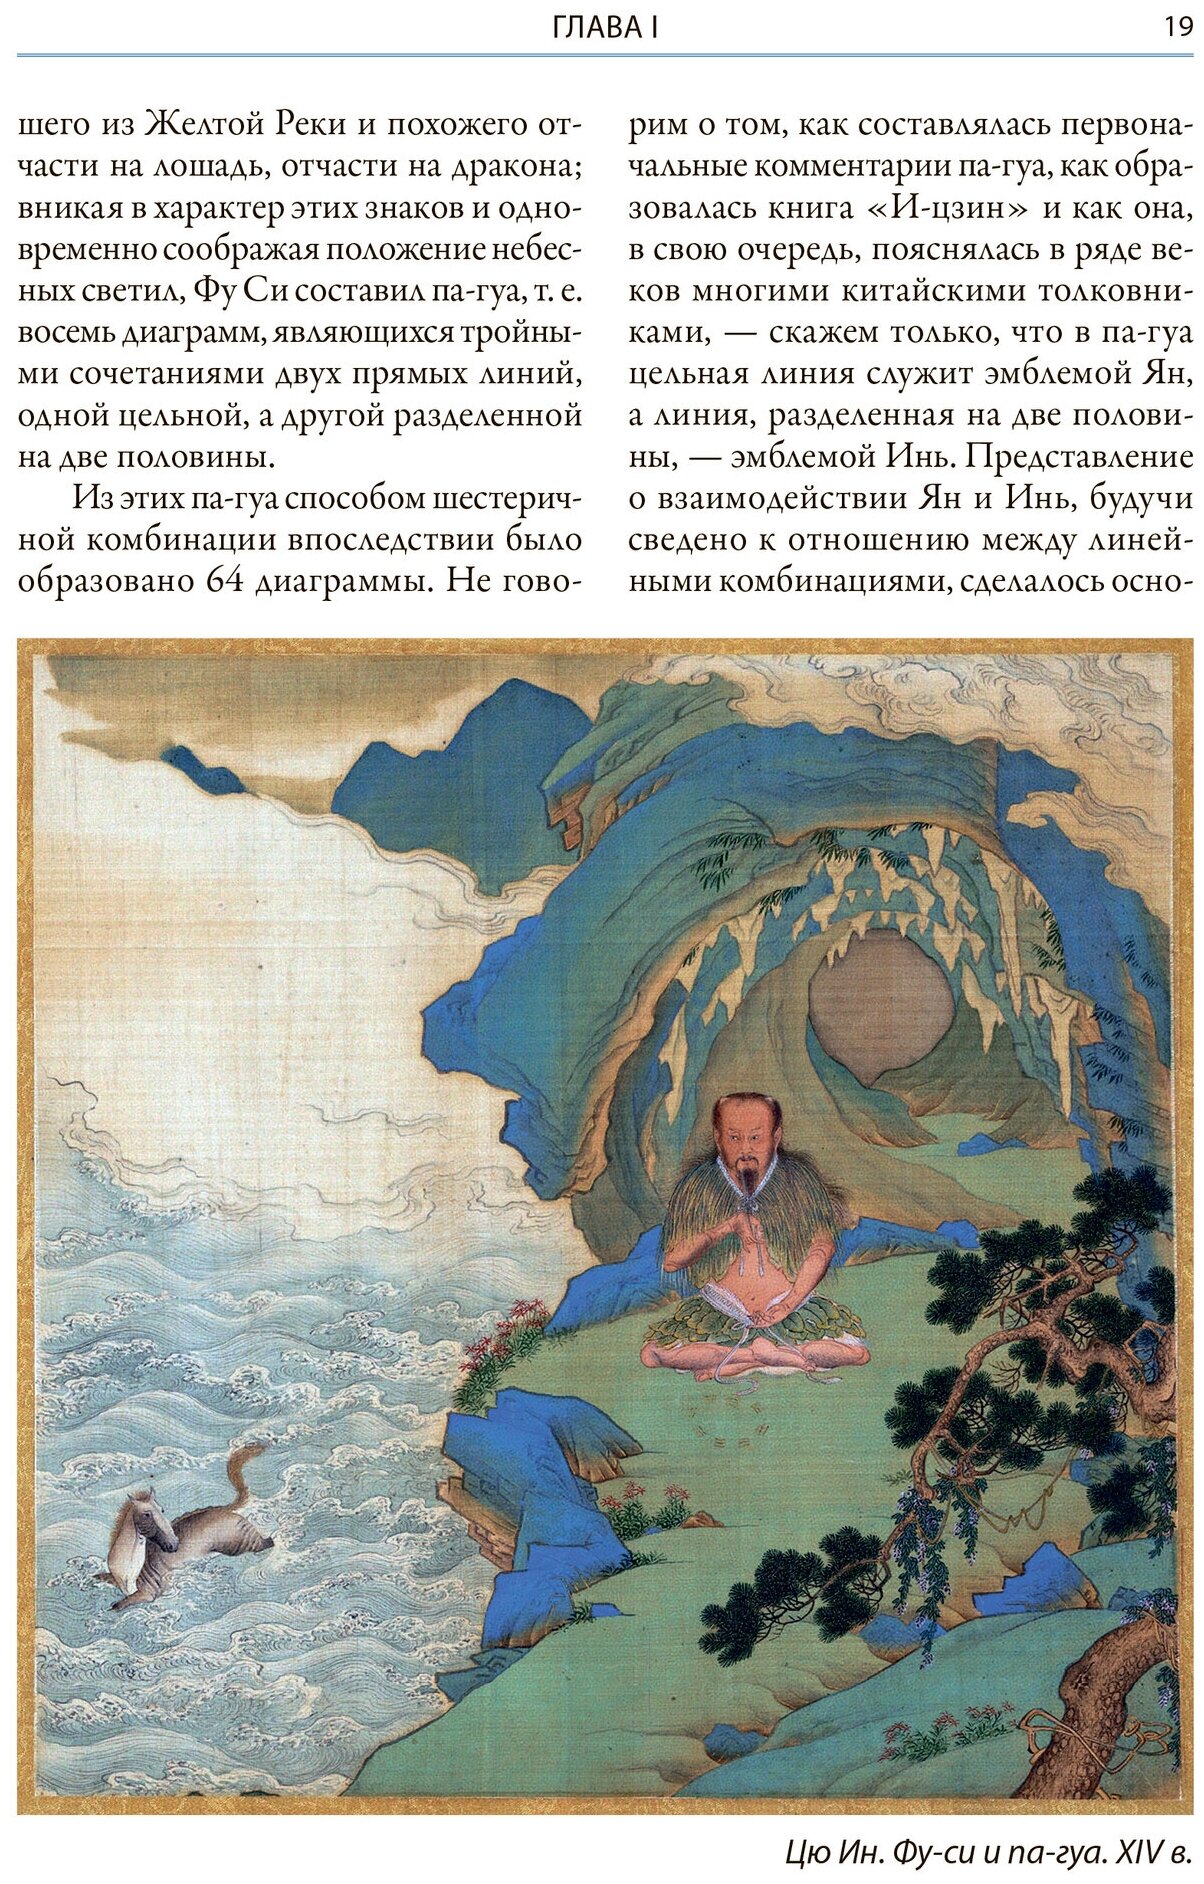 Мифы Древнего Китая Мифические воззрения и мифы китайцев - фото №9